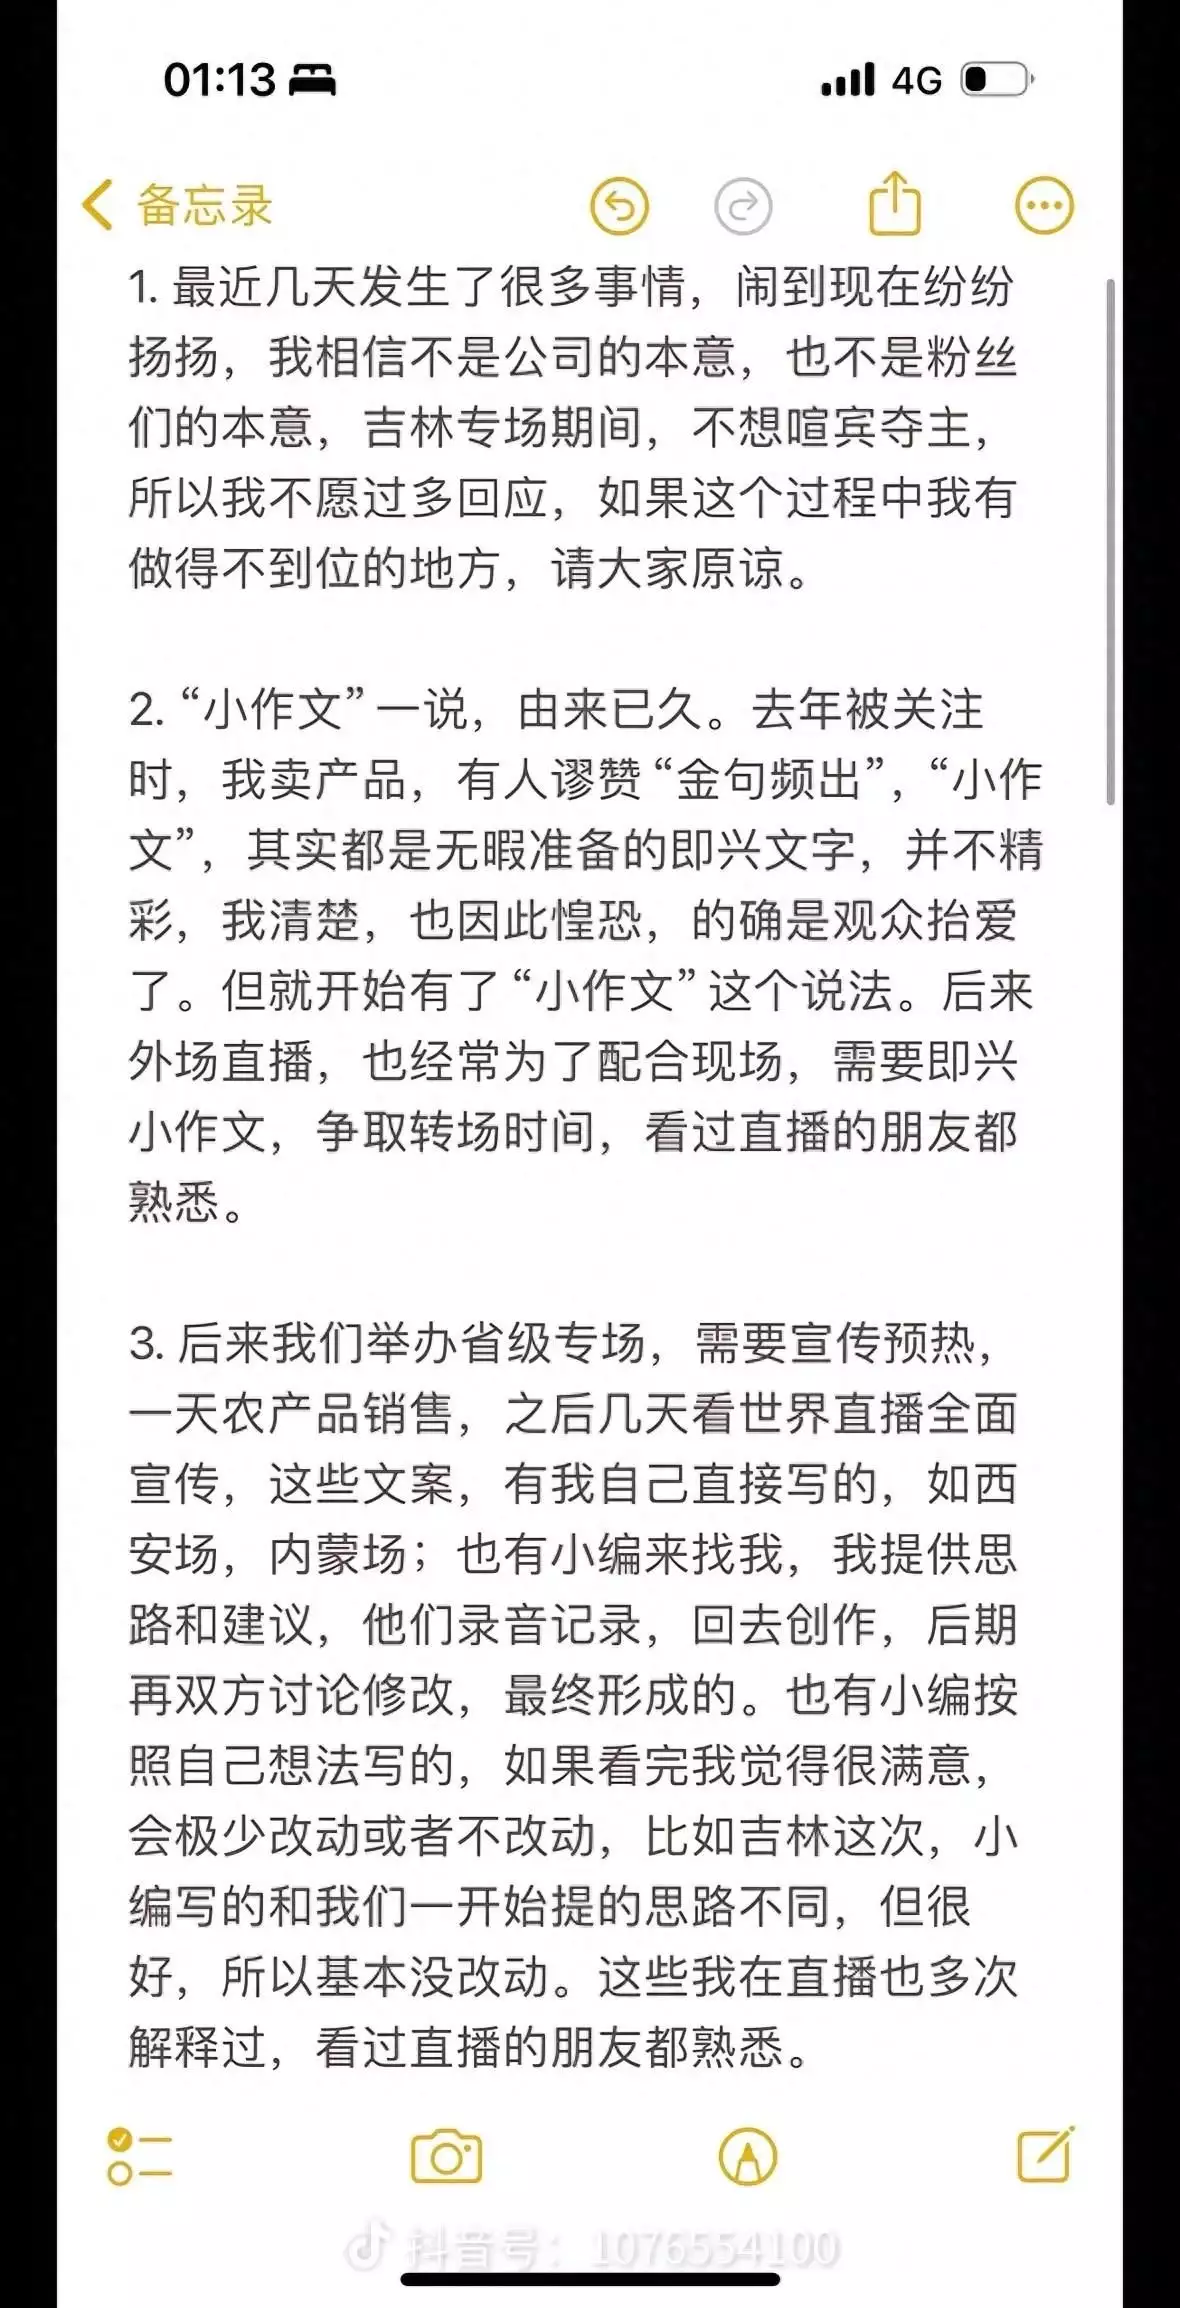 董宇辉写了一下午的惊艳端午文案，全文穿插20多个成语。行云流水，一气呵成 - 哔哩哔哩